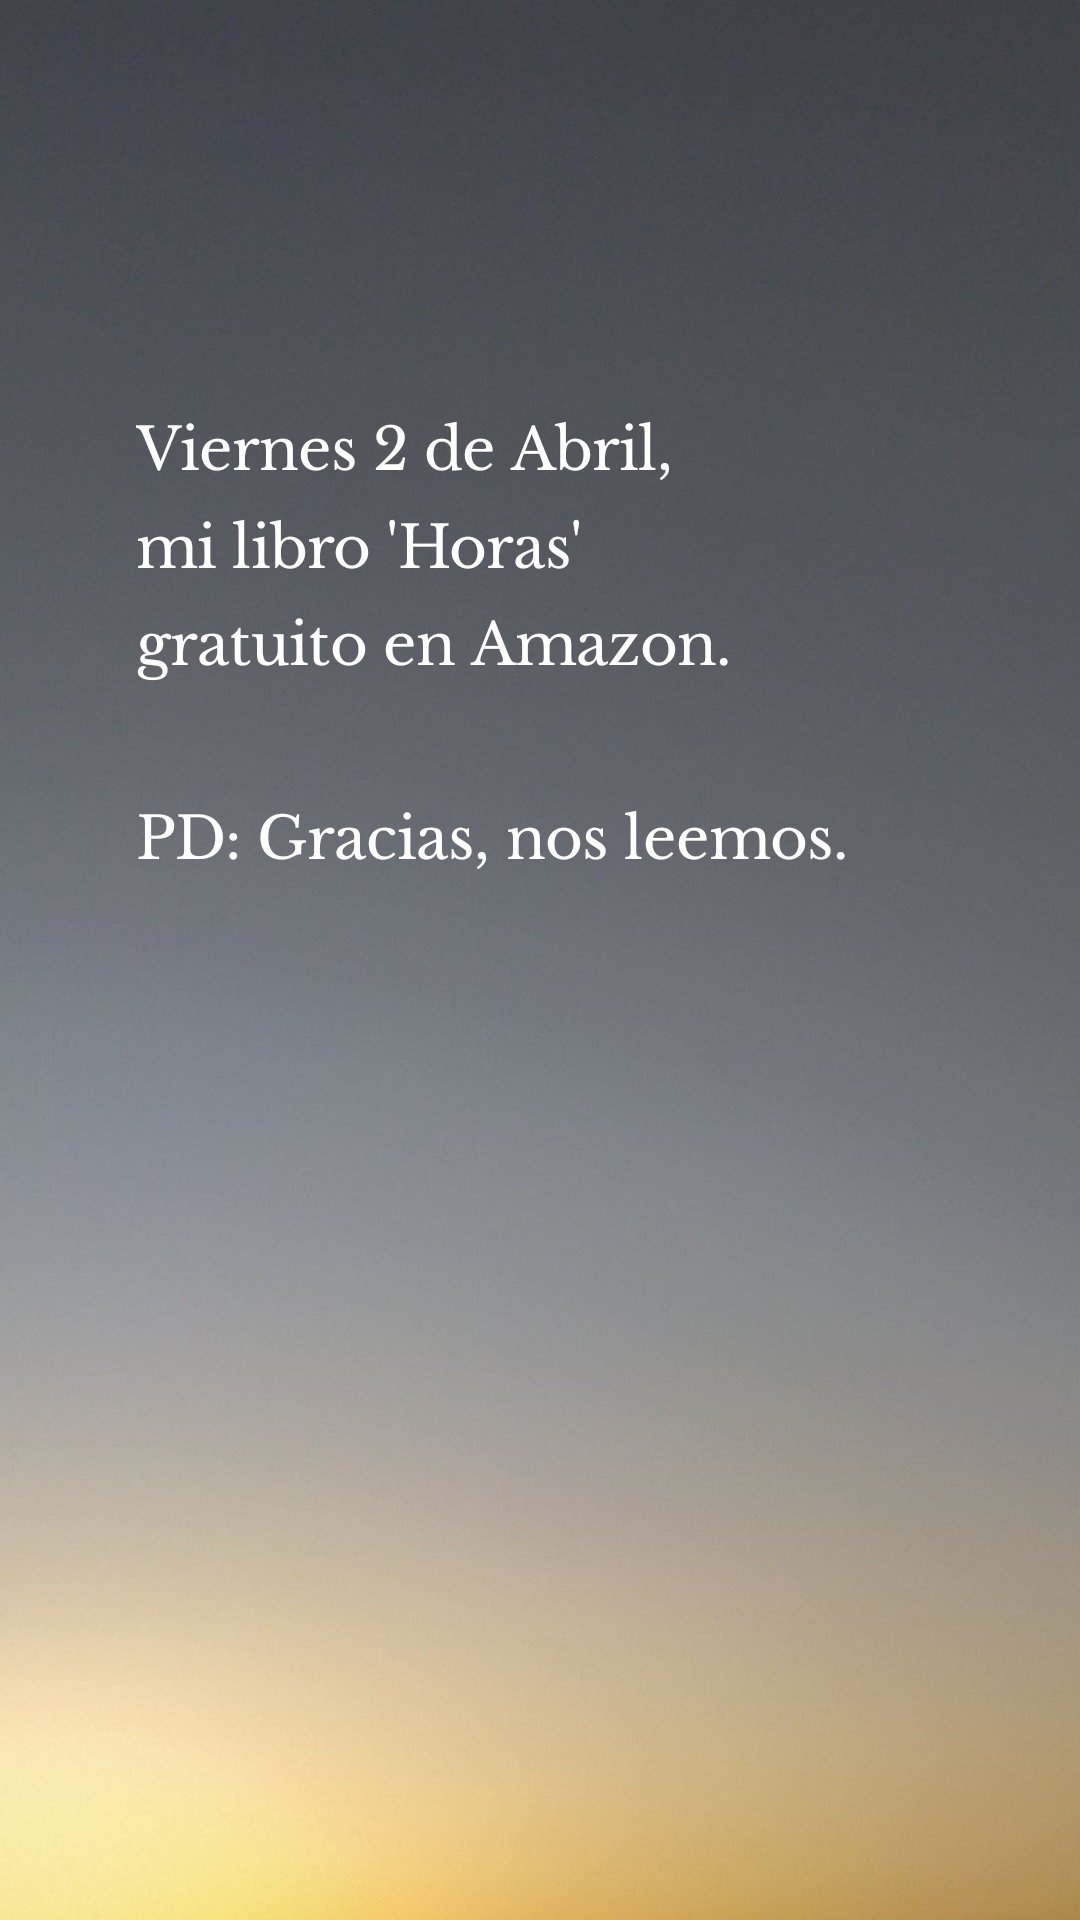 Viernes 2 de Abril,
mi libro 'Horas'
gratuito en Amazon.

PD: Gracias, nos leemos.